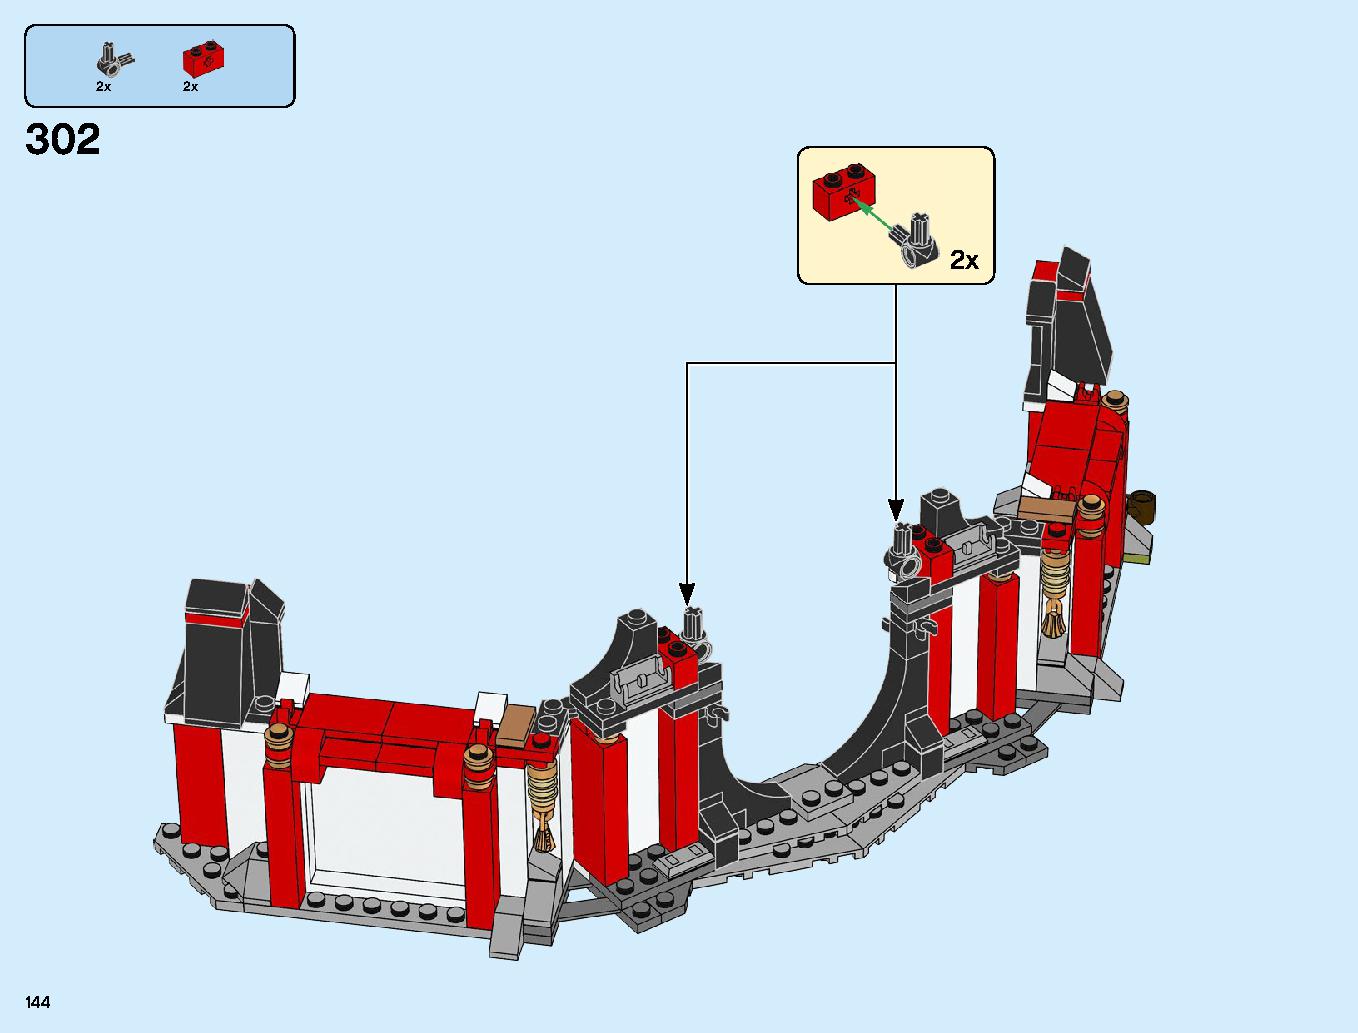 ニンジャ道場 70670 レゴの商品情報 レゴの説明書・組立方法 144 page